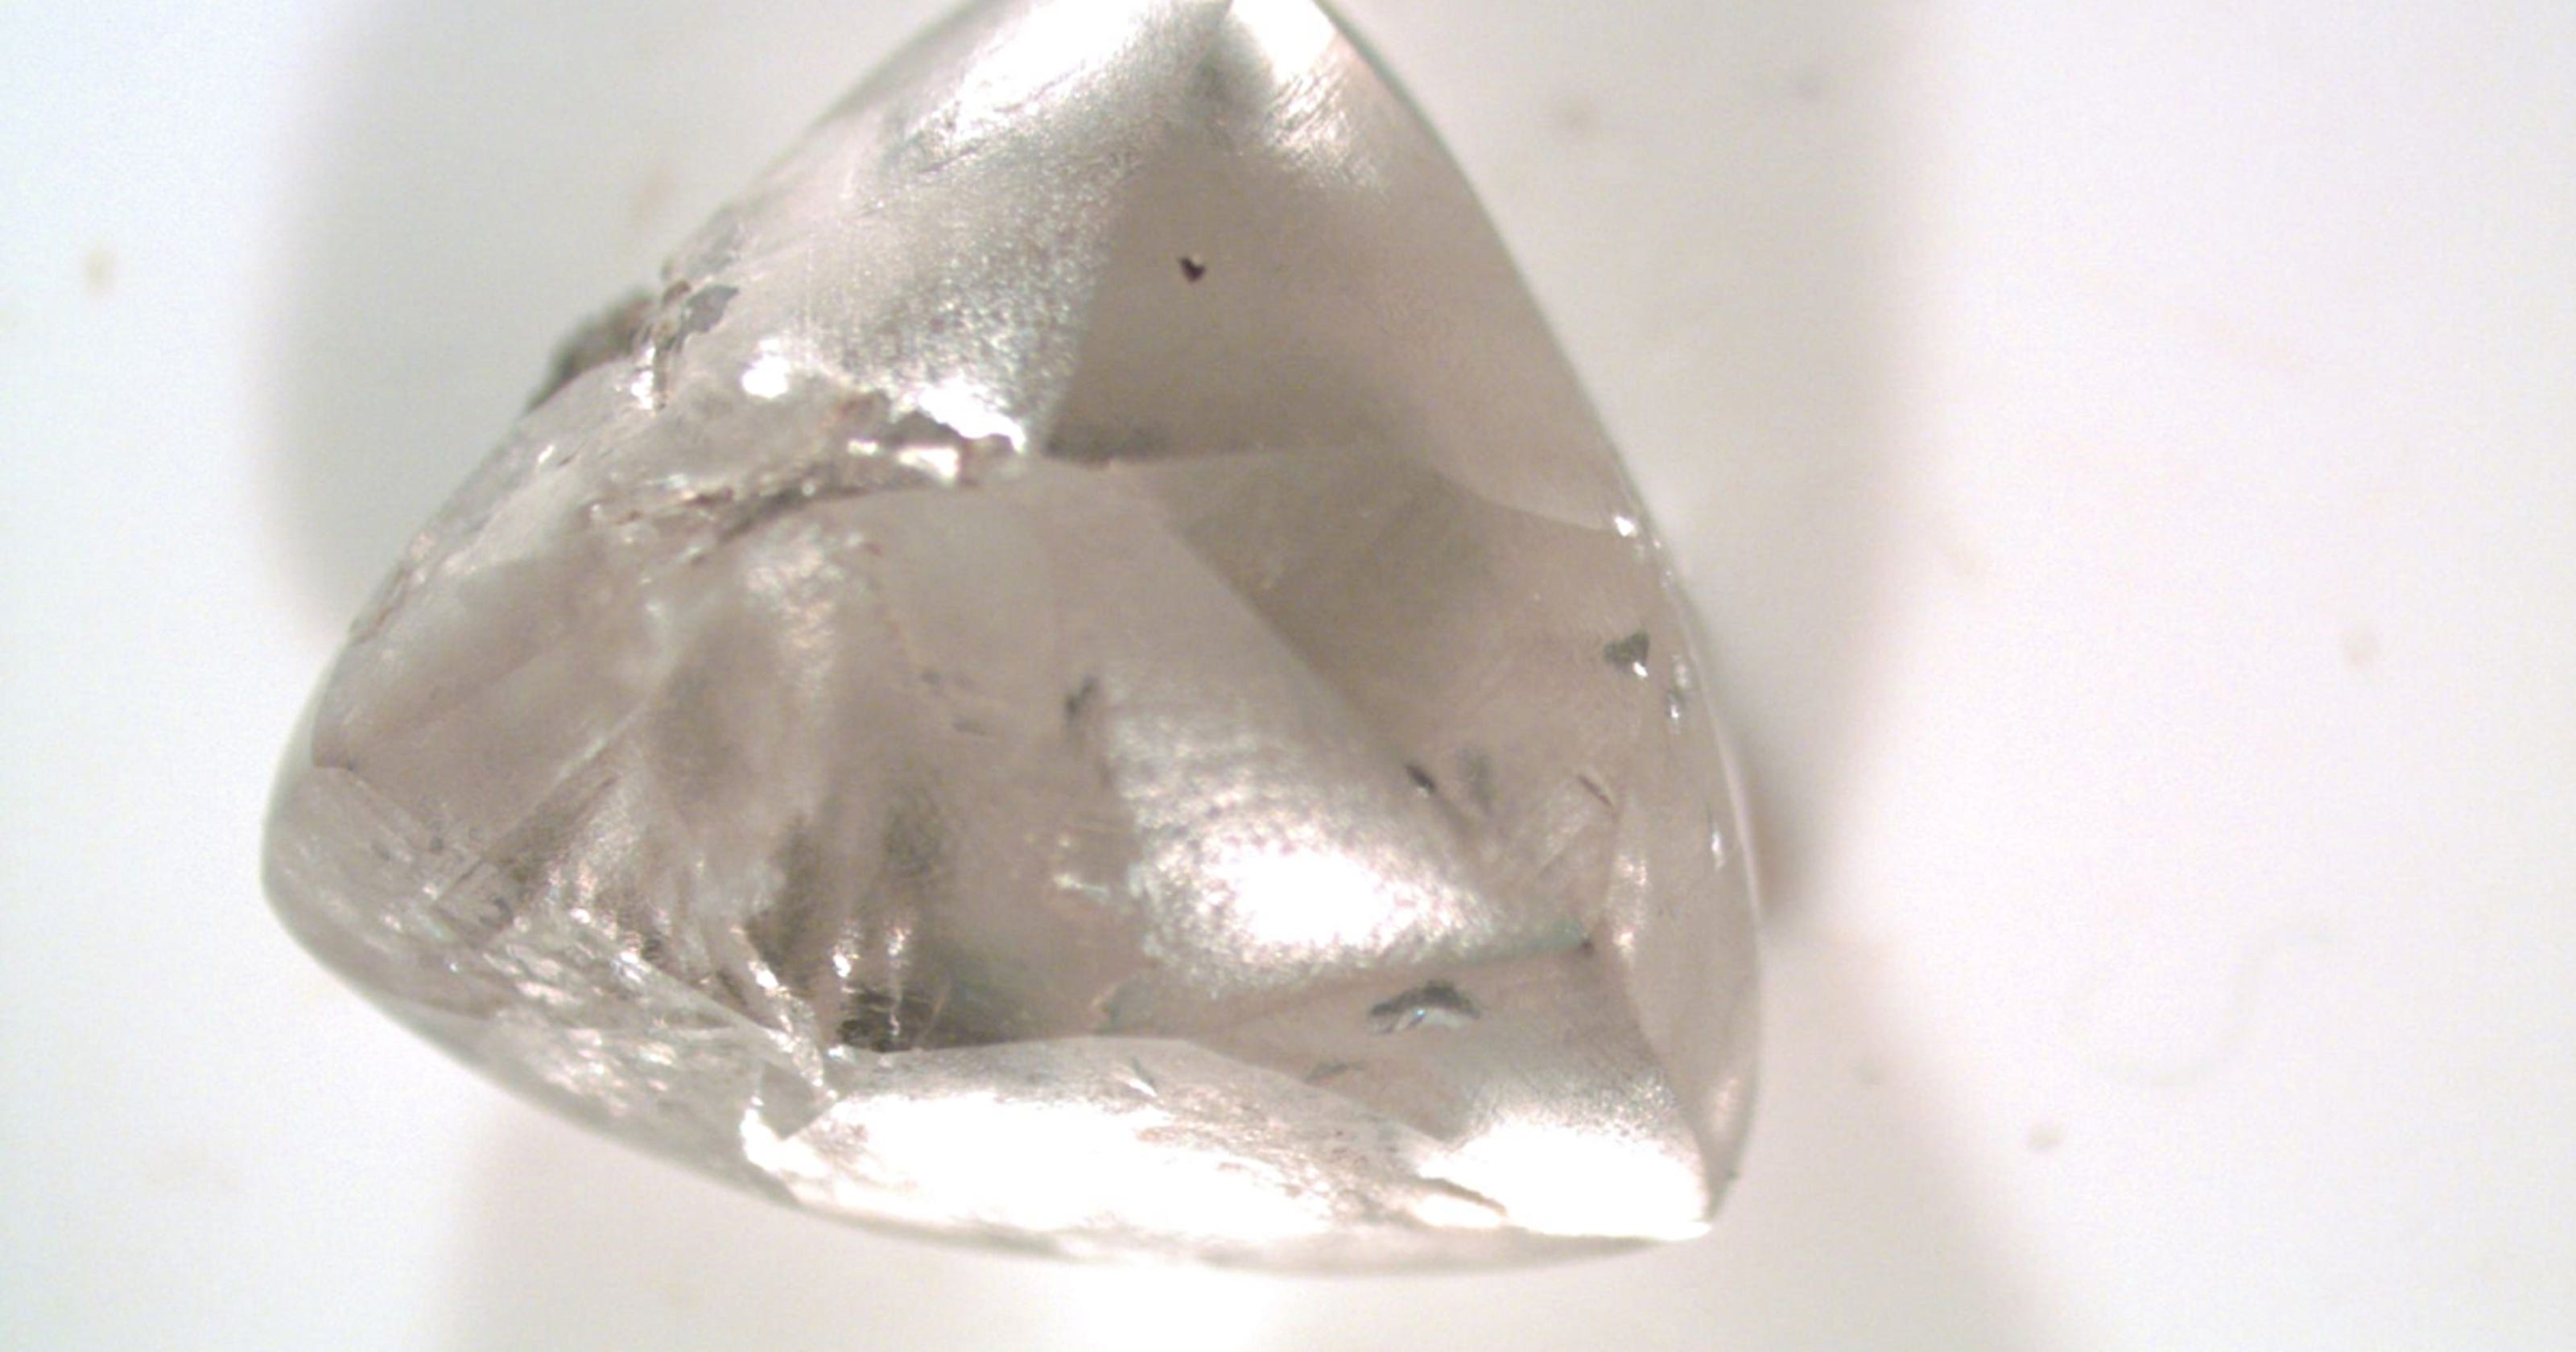 Jackpot! Dad and daughter find 2 carat diamond at Arkansas park3200 x 1680